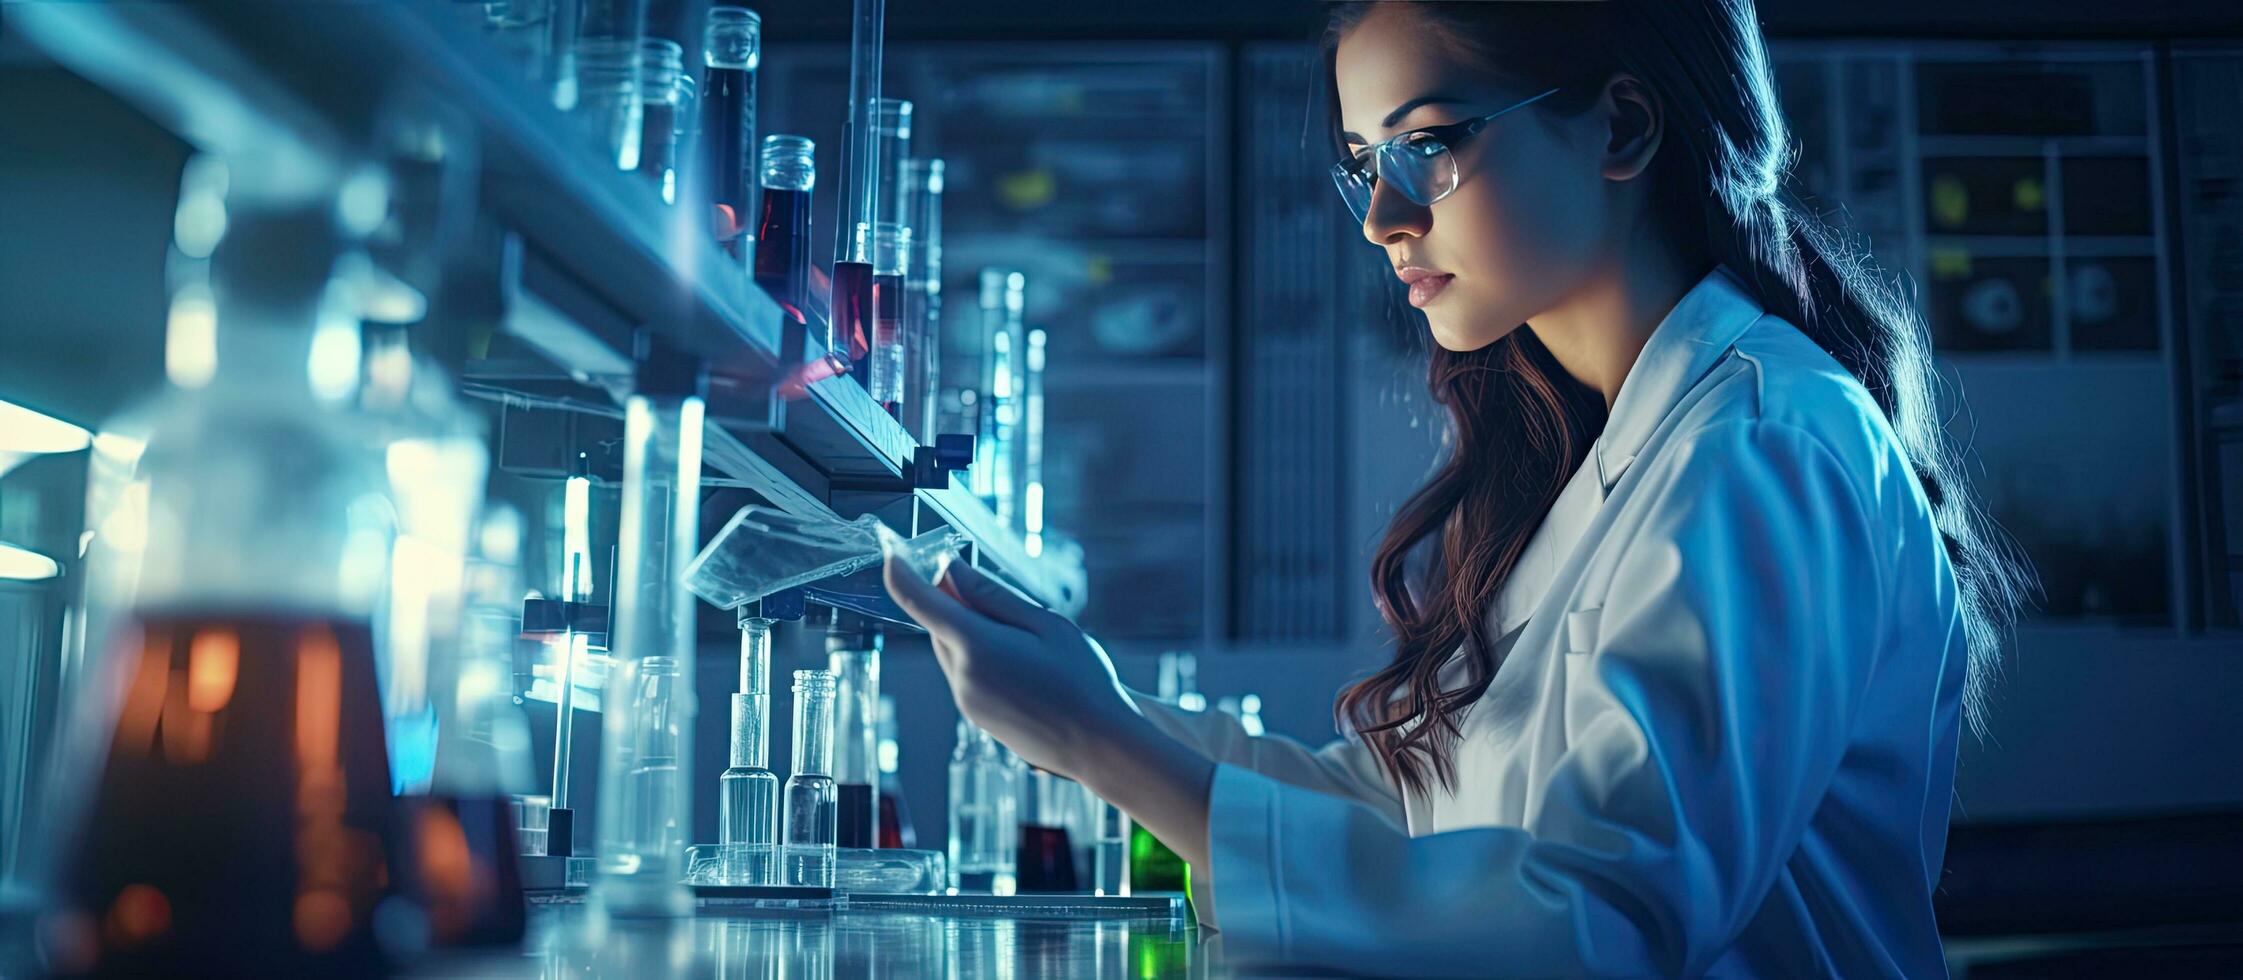 femme scientifique conduite expérience dans une laboratoire avec produits chimiques et équipement en cours d'analyse médical innovation dans biochimie copie espace photo